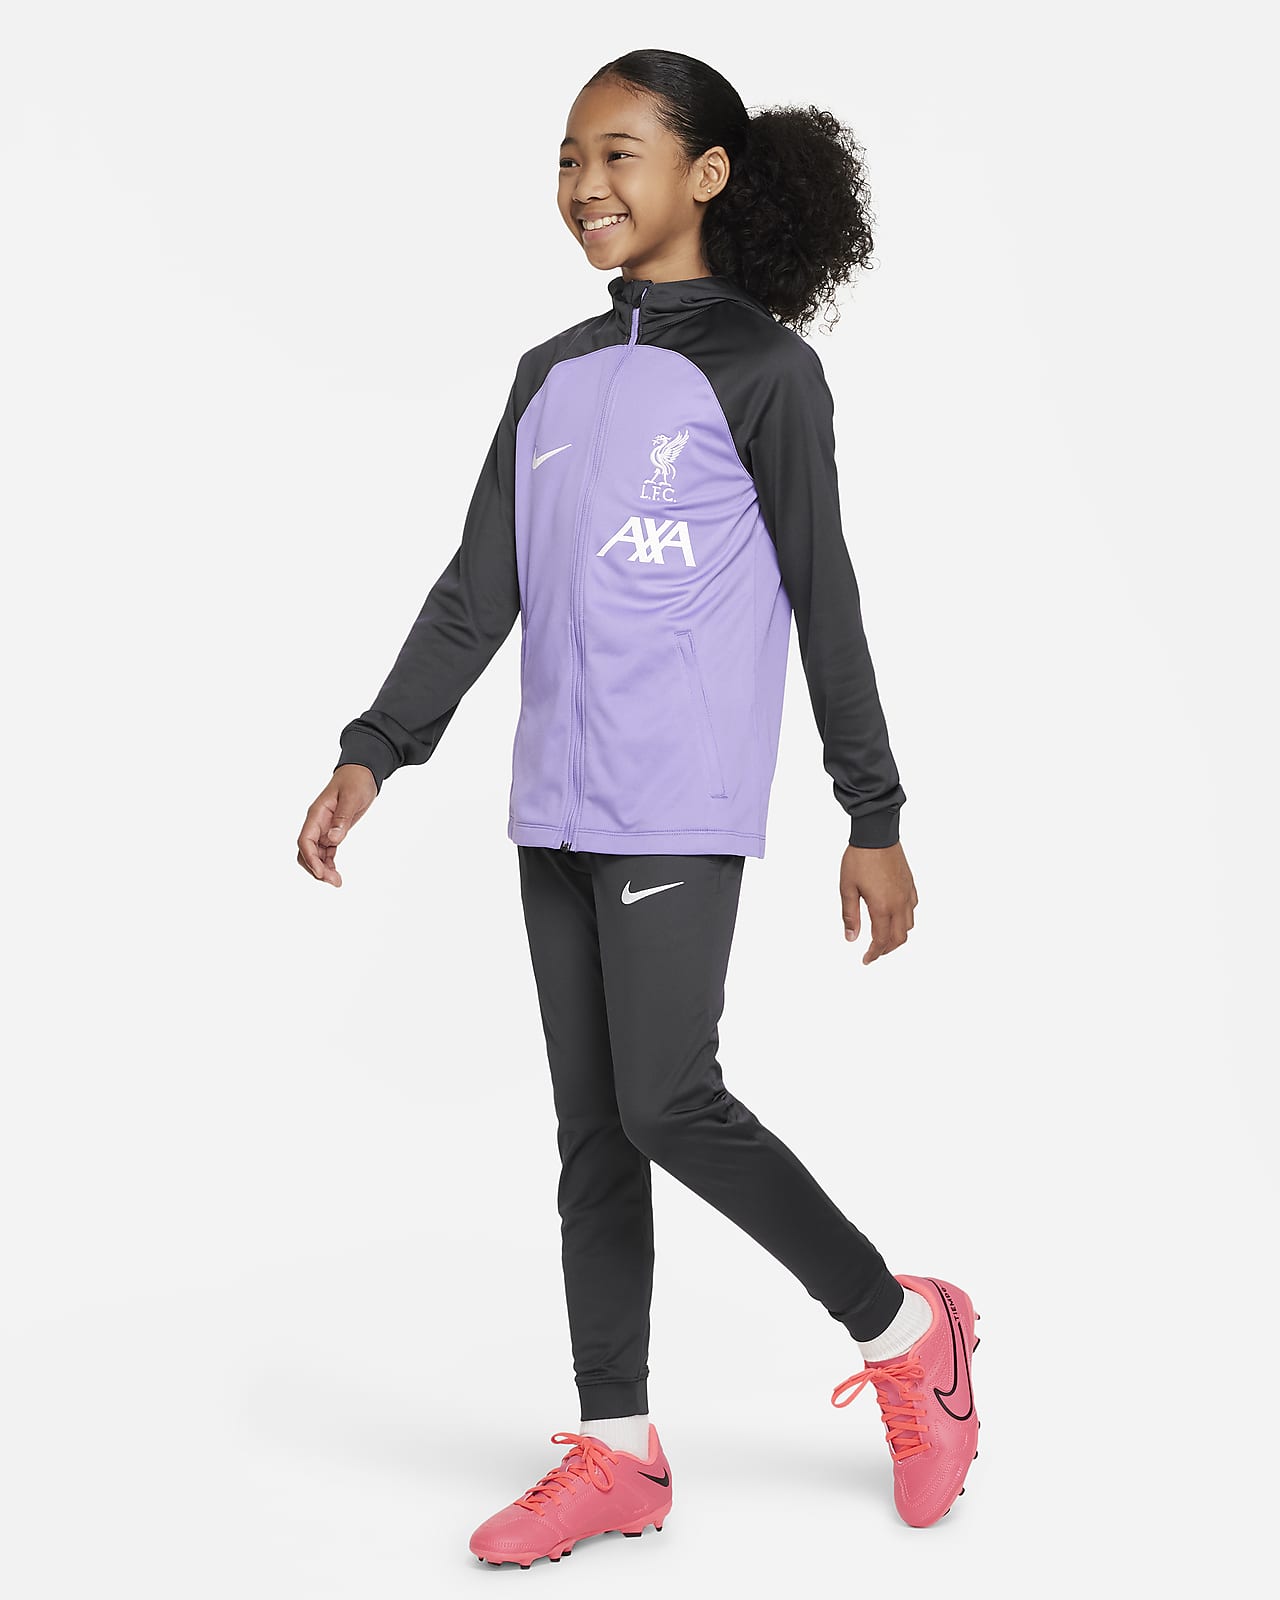 Φόρμα με κουκούλα Nike Dri-FIT Λίβερπουλ Strike για μεγάλα παιδιά